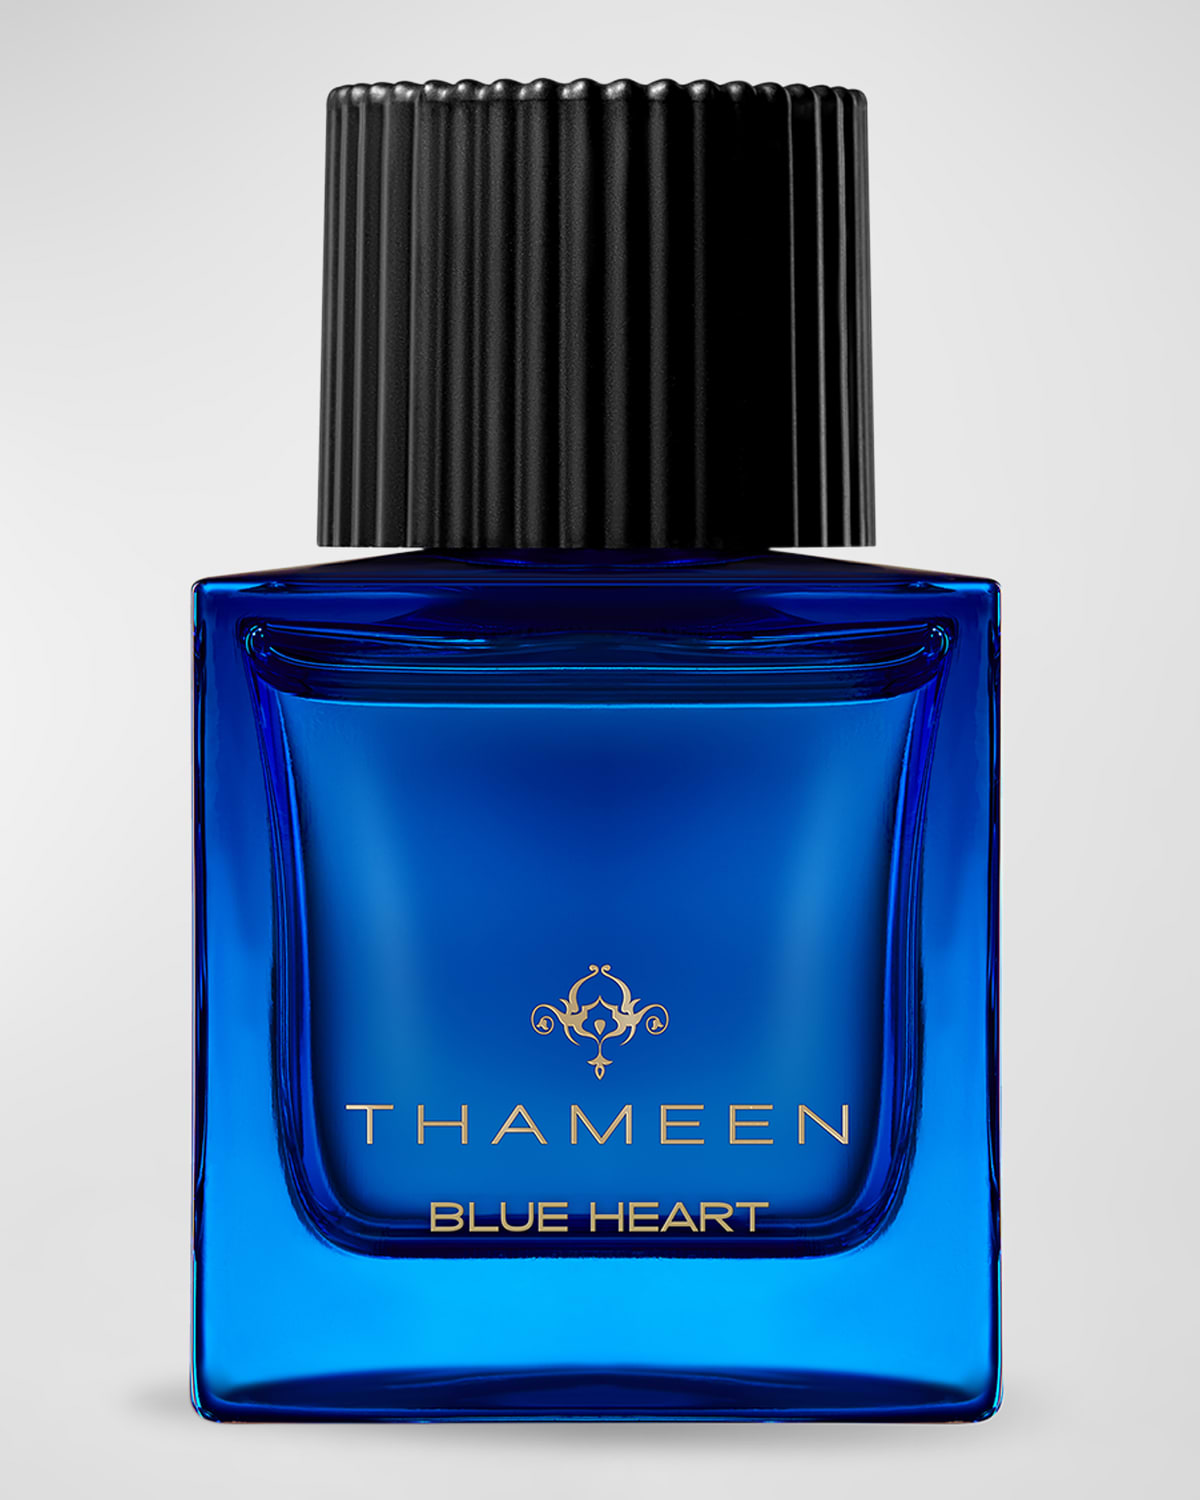 Blue Heart Extrait de Parfum, 1.7 oz.